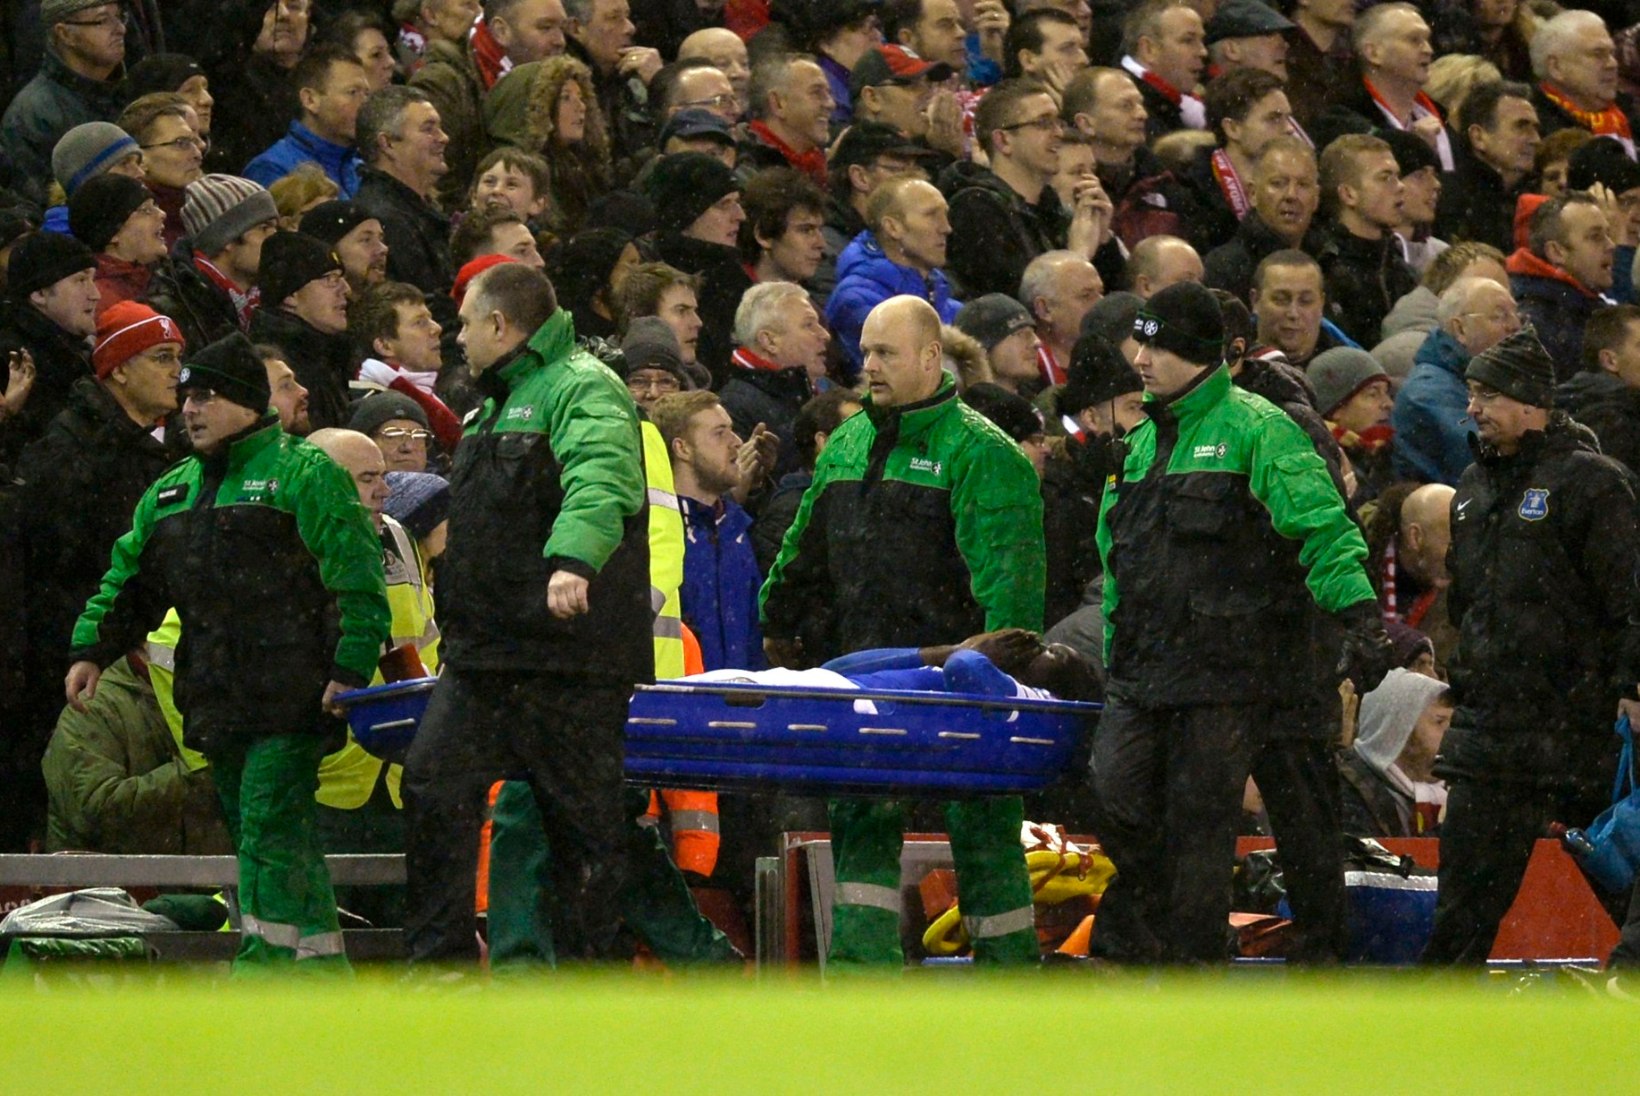 VIDEO: Evertoni jalgpallur libastus ja vigastas rängalt oma meeskonna mängijat